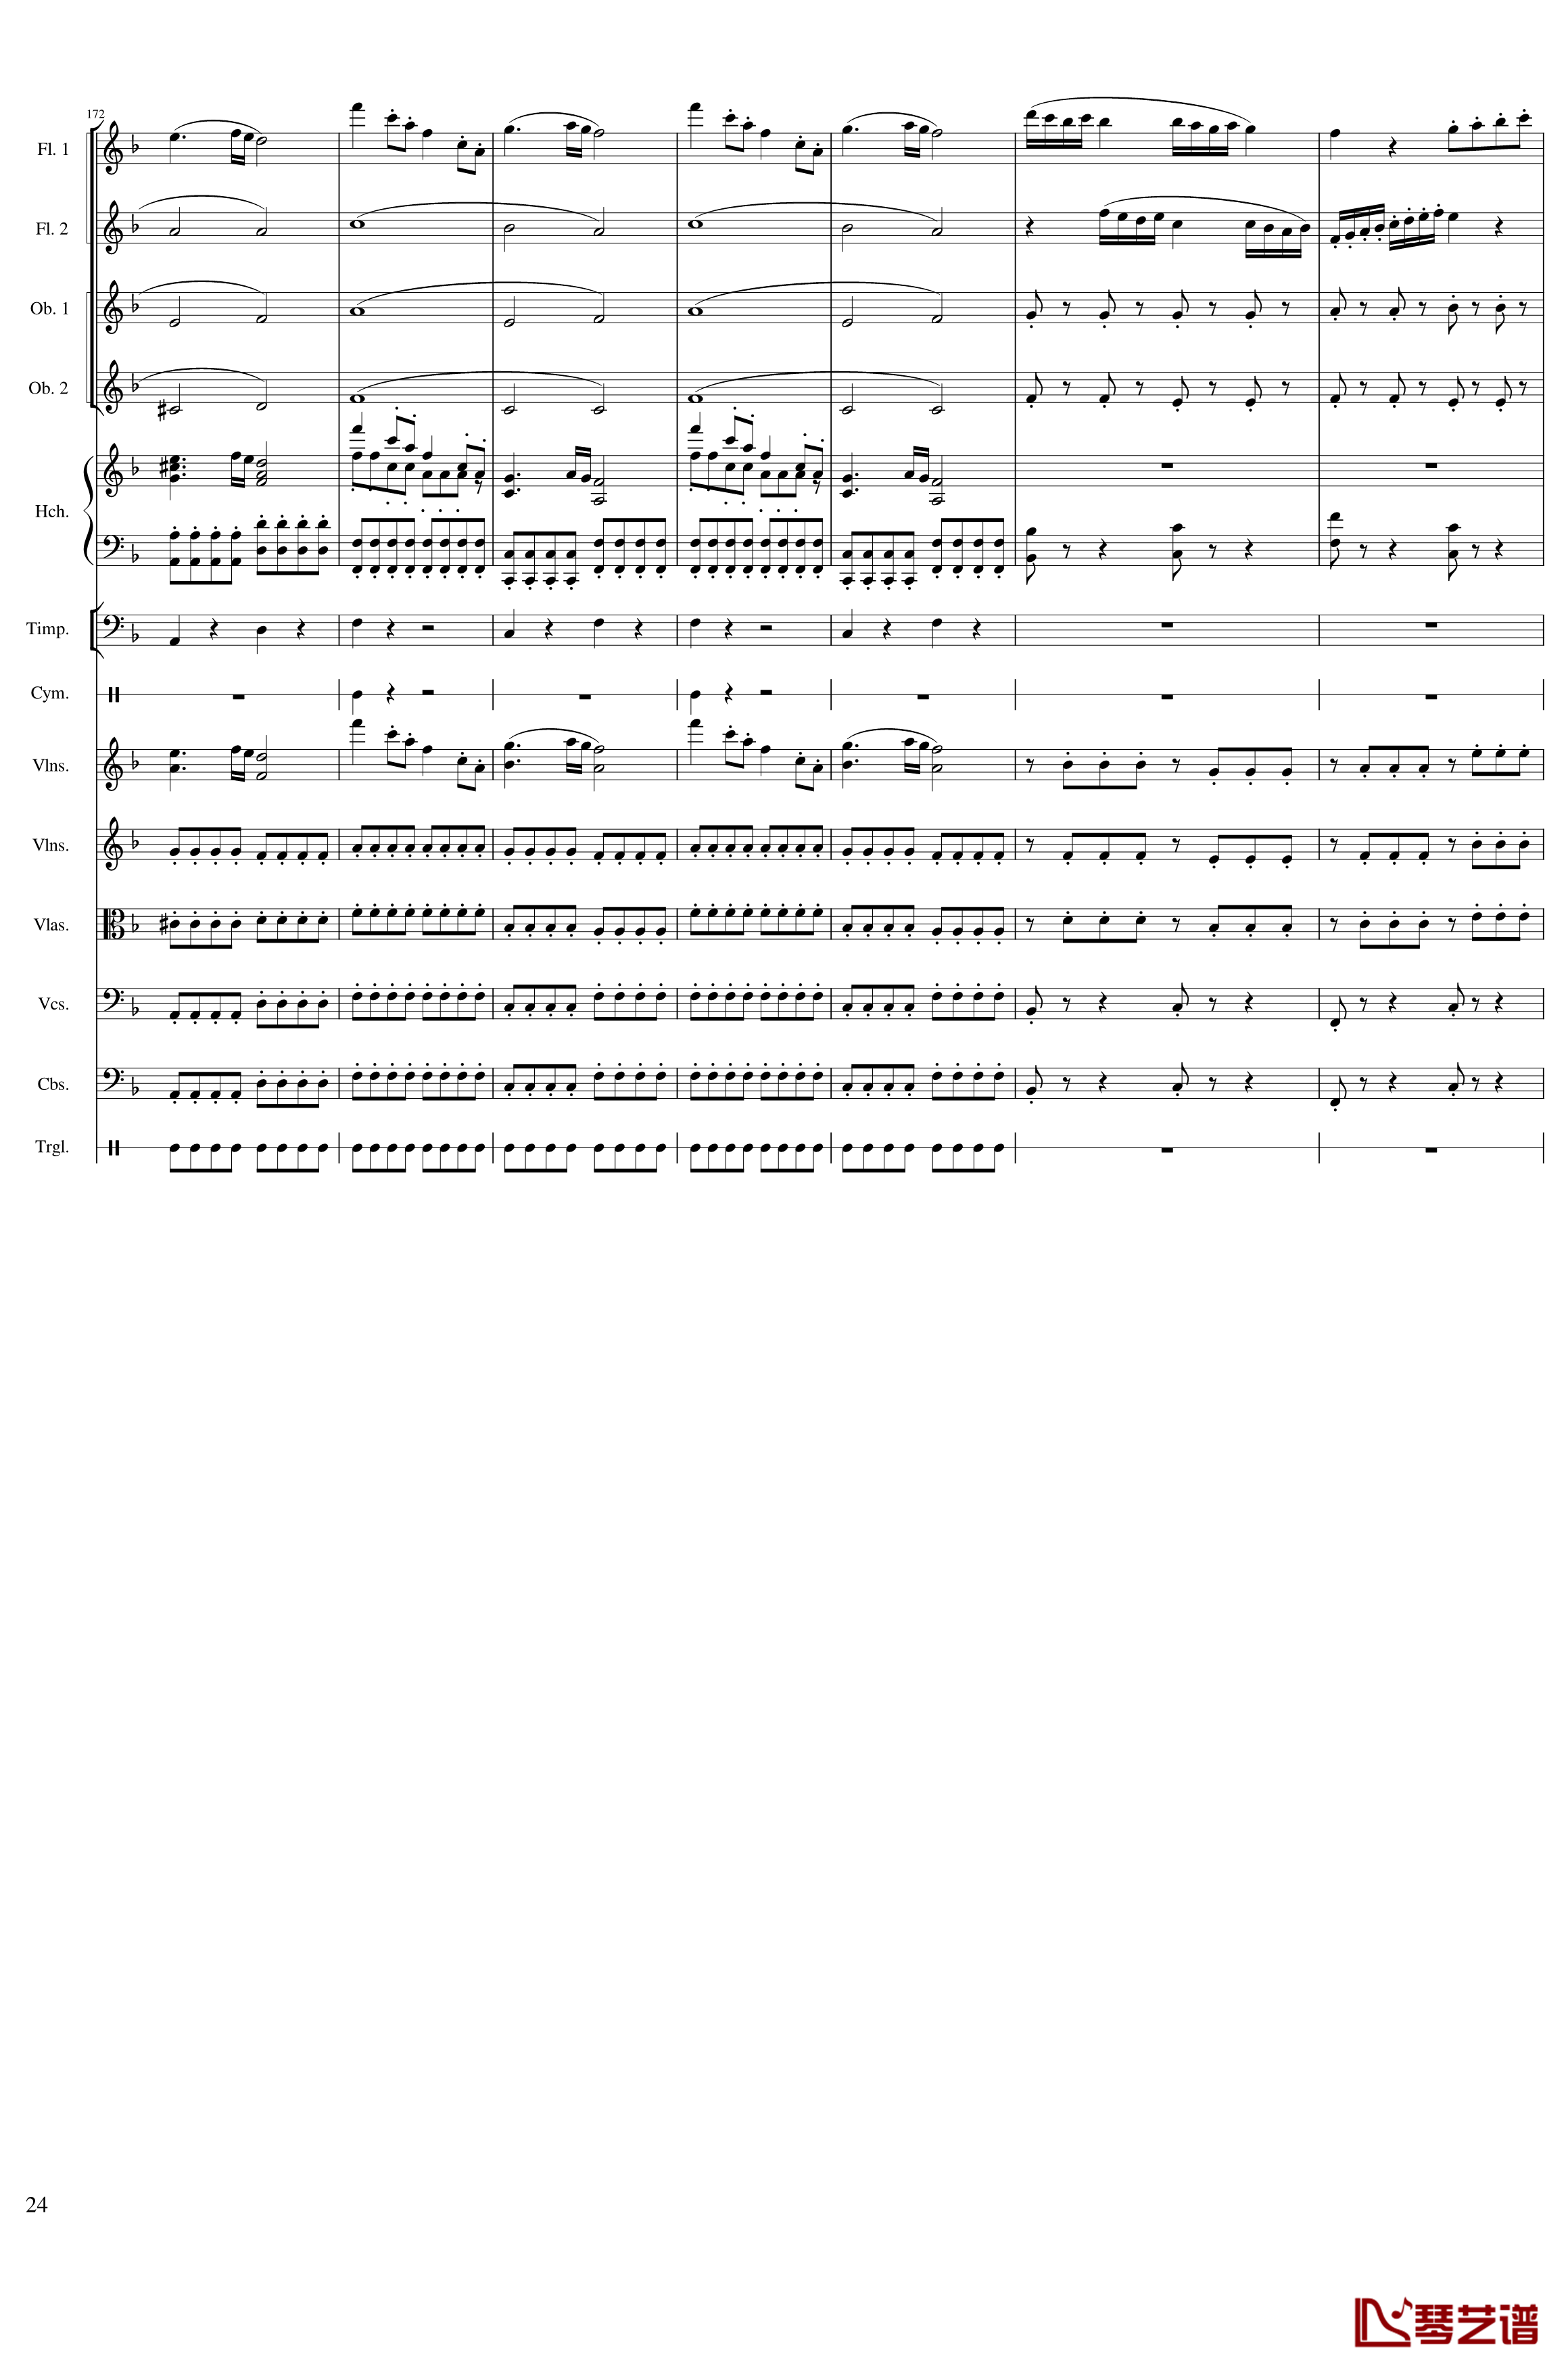 春节序曲钢琴谱-作品121-一个球24